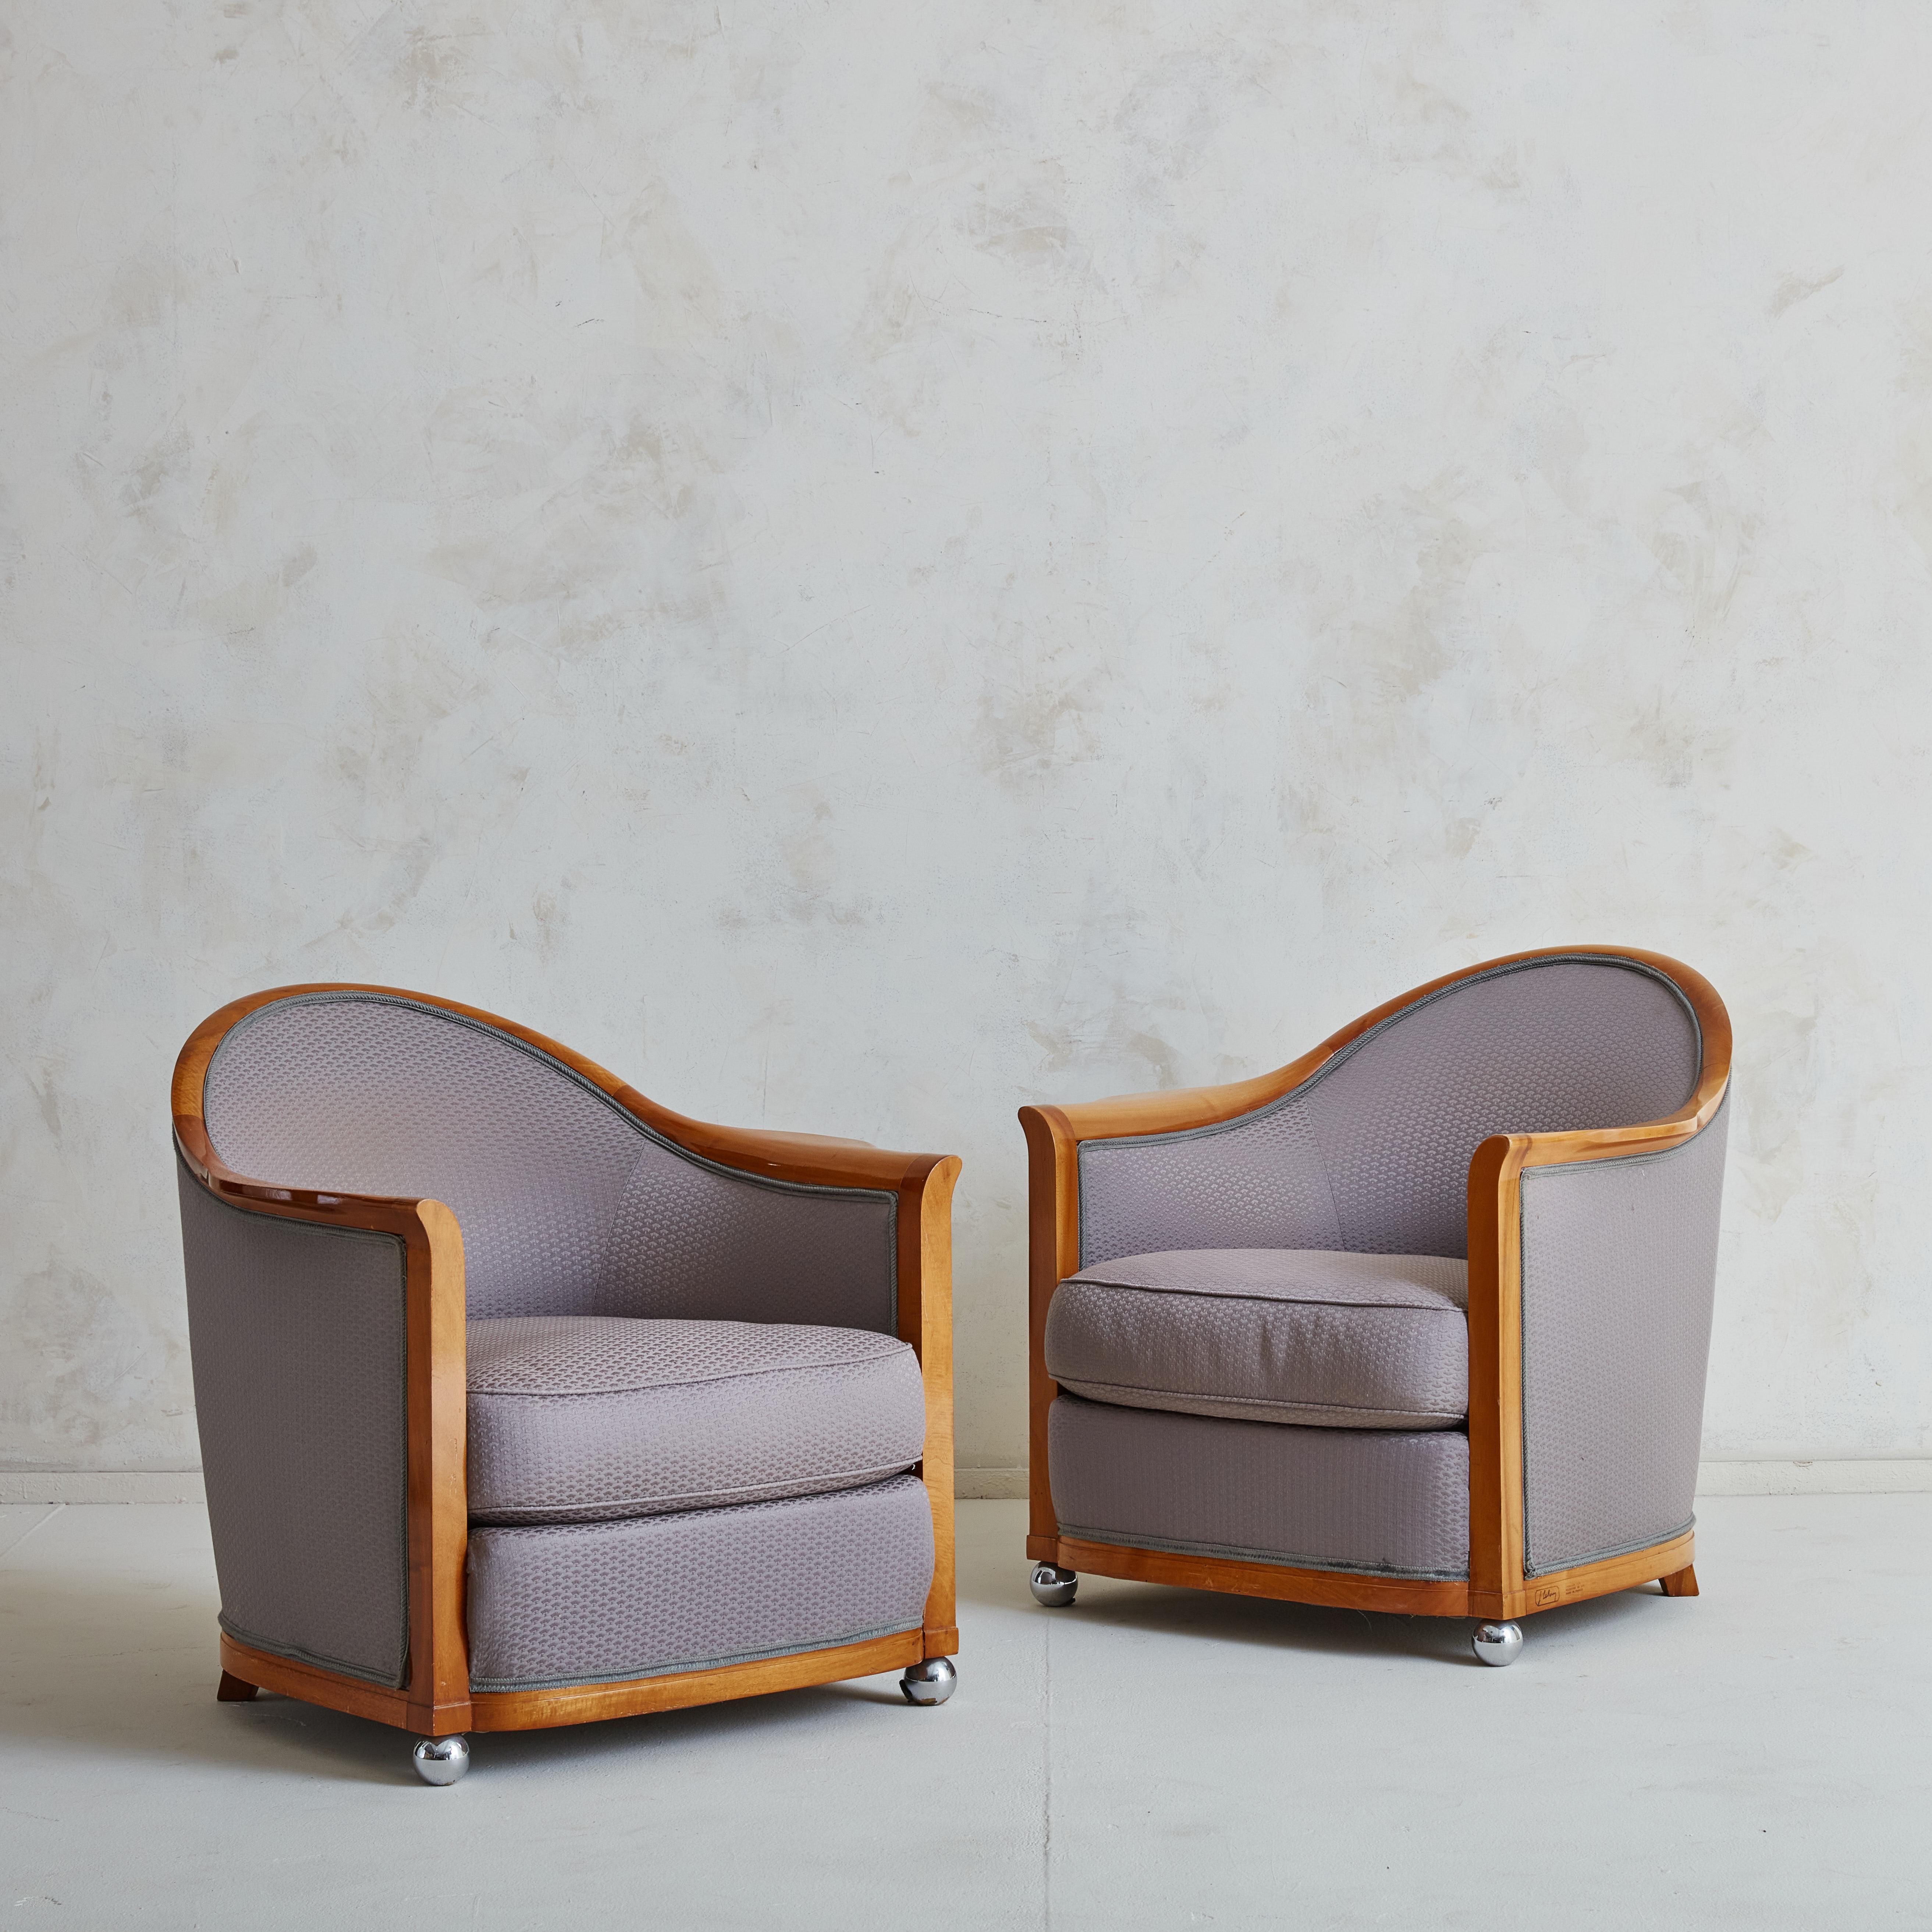 Schönes Paar Art-Déco-Sessel, entworfen von Jules Leleu im Jahr 1929,  und 1986 für das Hotel La Mamounia in Marrakesch, das von Jacques Garcia in Auftrag gegeben wurde, neu aufgelegt. 
Dieses schöne Sesselpaar wurde in einer beeindruckenden hellen